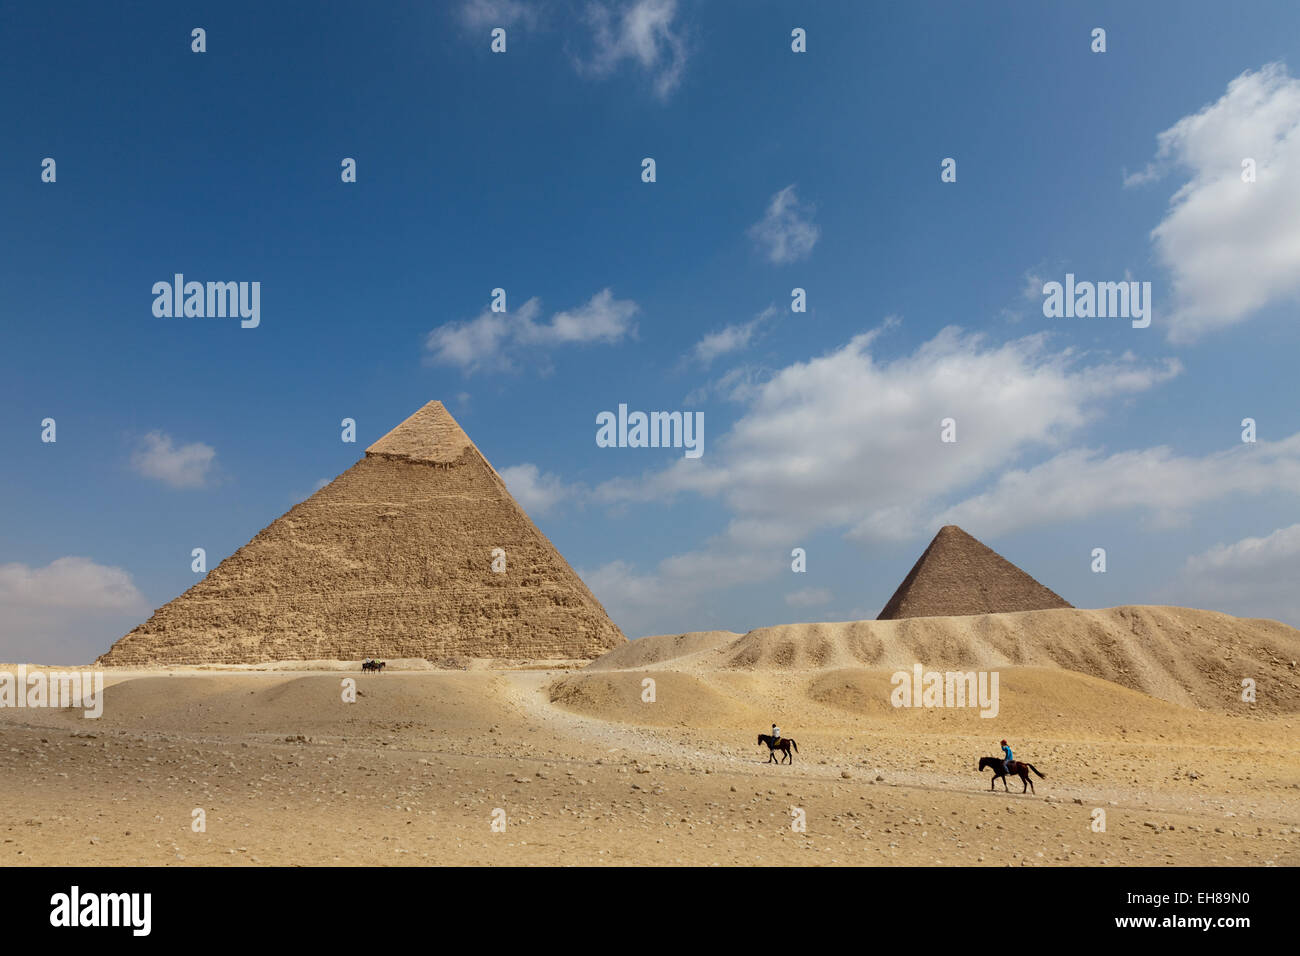 La pyramide de Khafré et la grande pyramide de Gizeh, UNESCO World Heritage Site, près du Caire, Egypte, Afrique du Nord, Afrique Banque D'Images